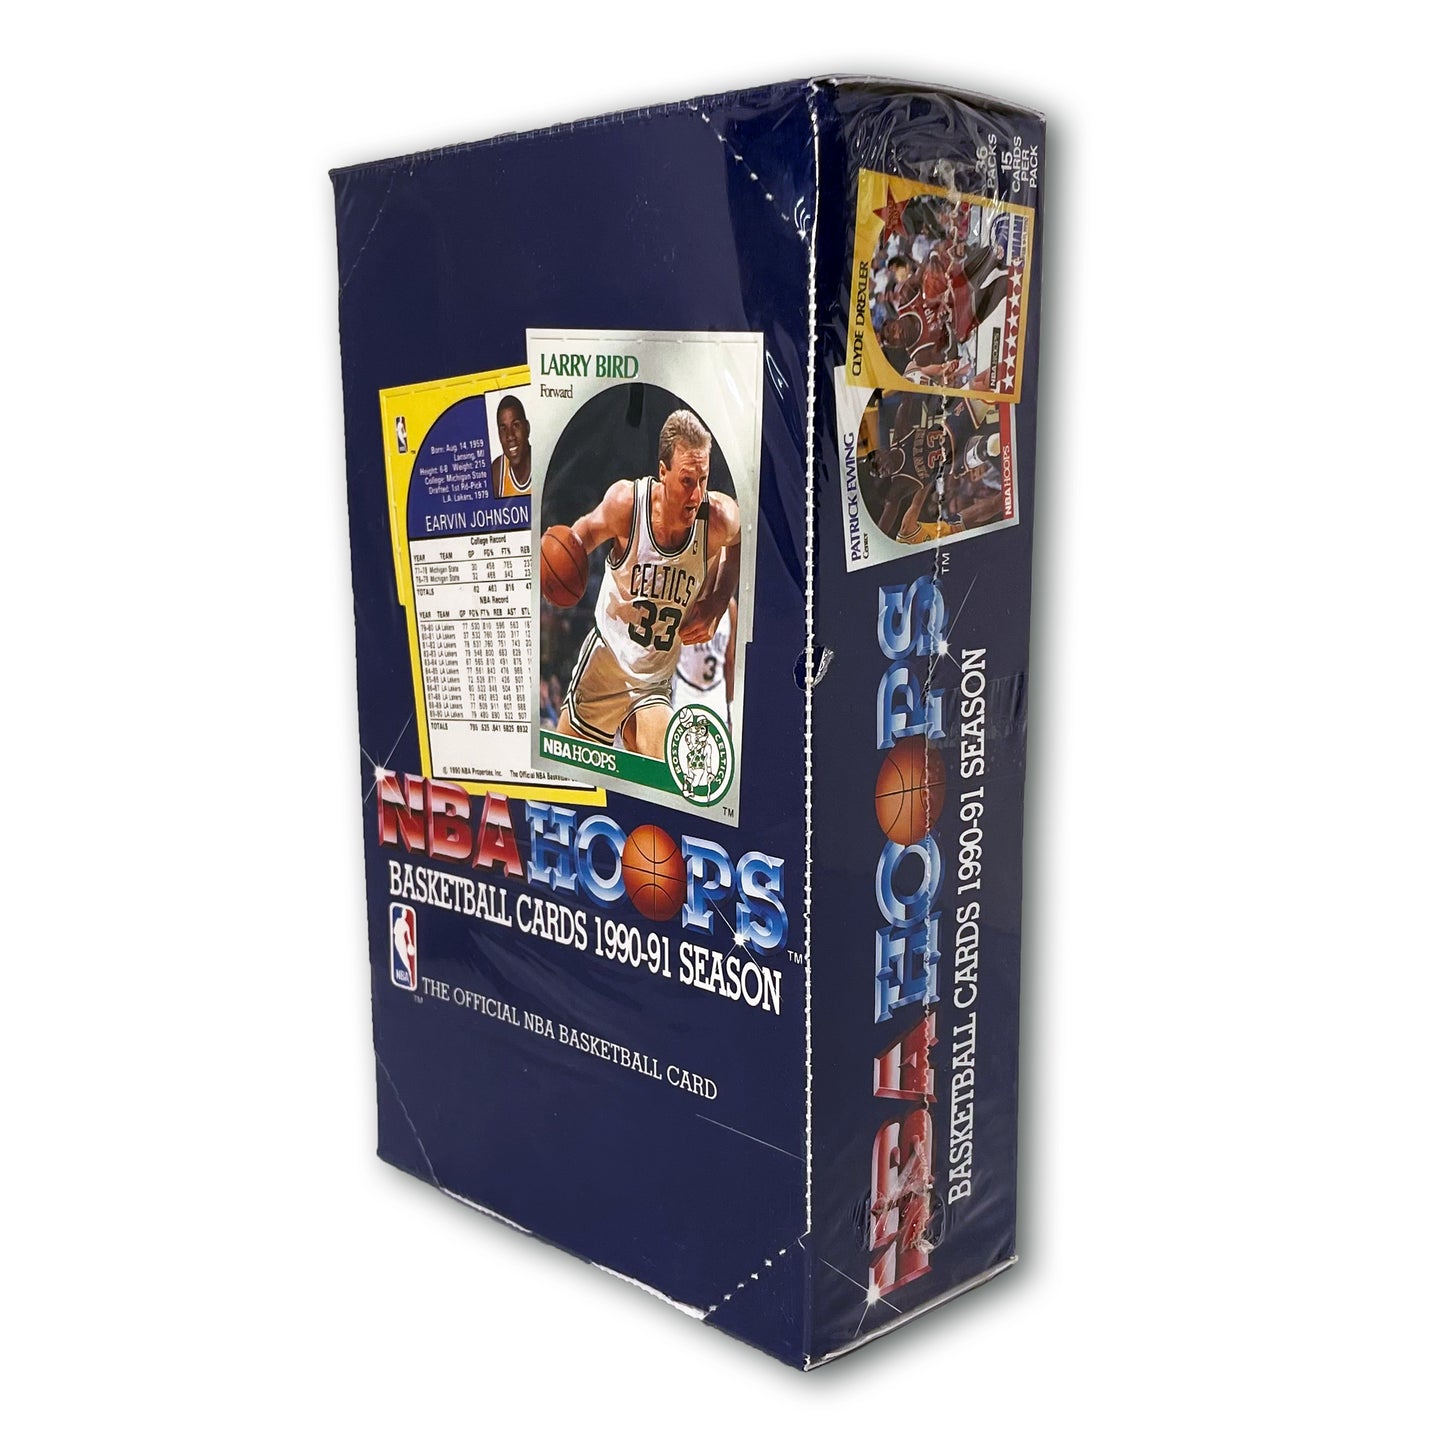 NBA Hoops Basketball Cards 1990-91 Season (Blue)